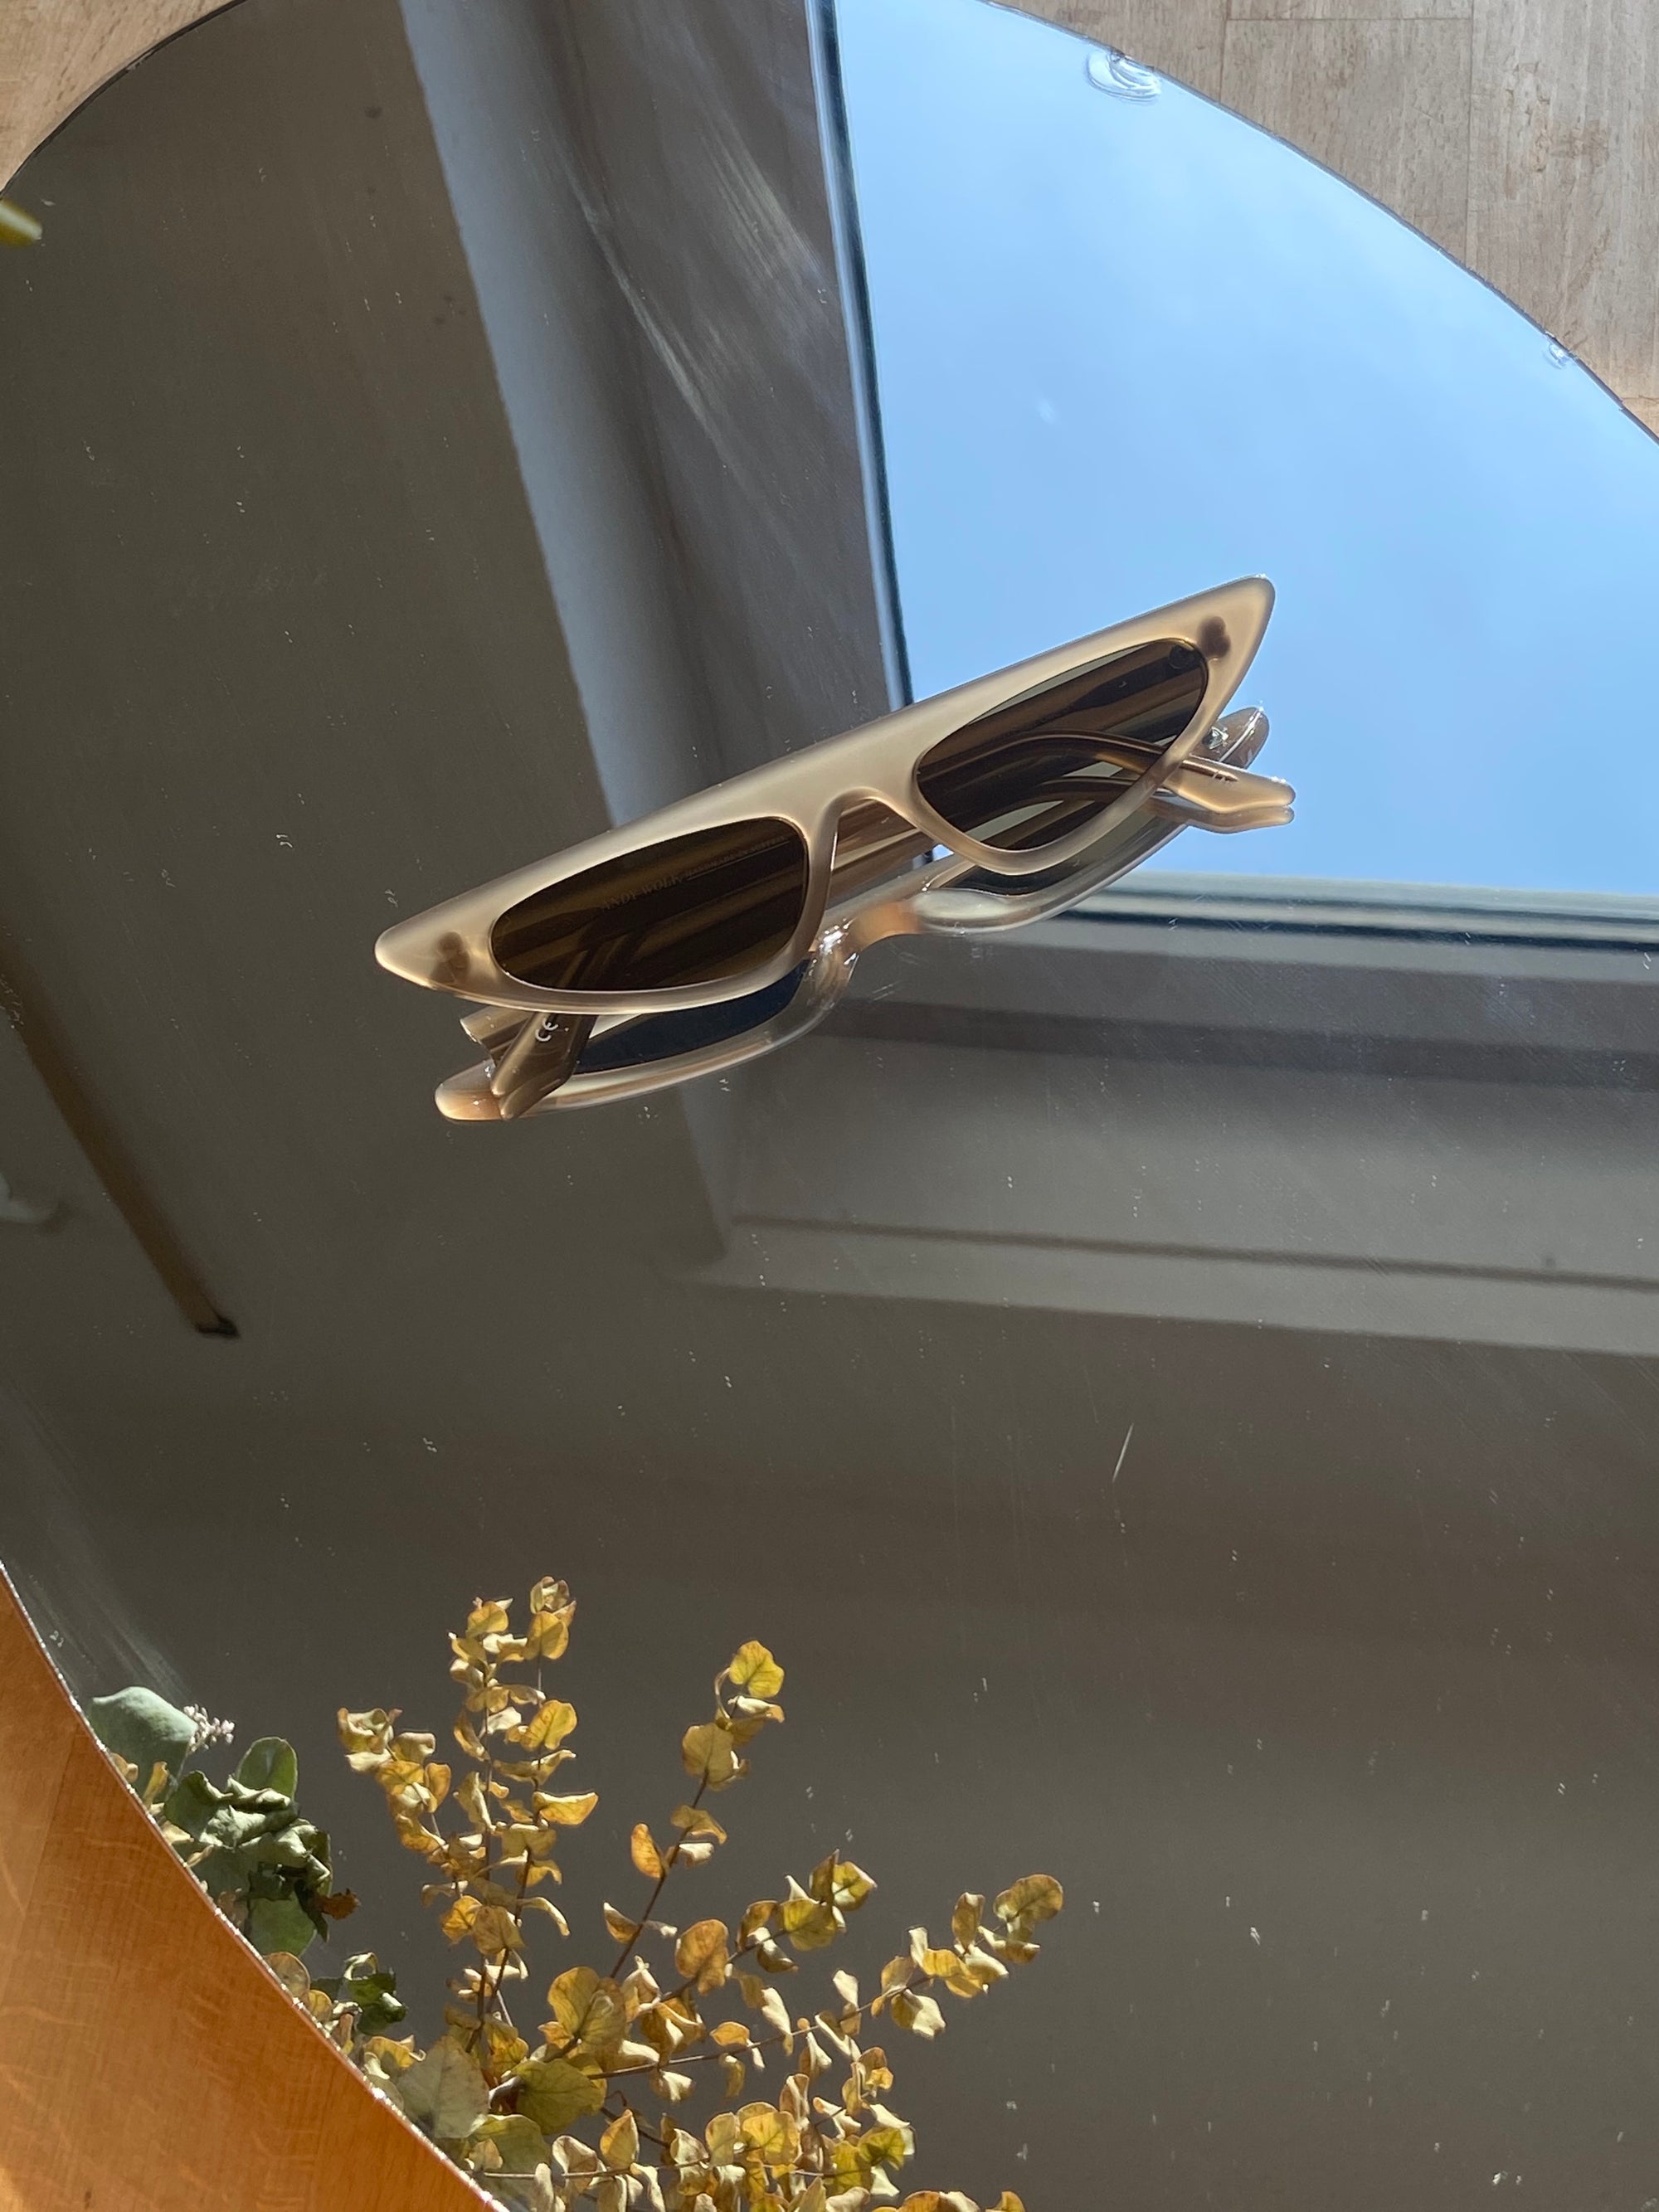 Produktbild der Andy Wole Sunglasses Florence ash von oben vor einem Spiegelhintergrund.